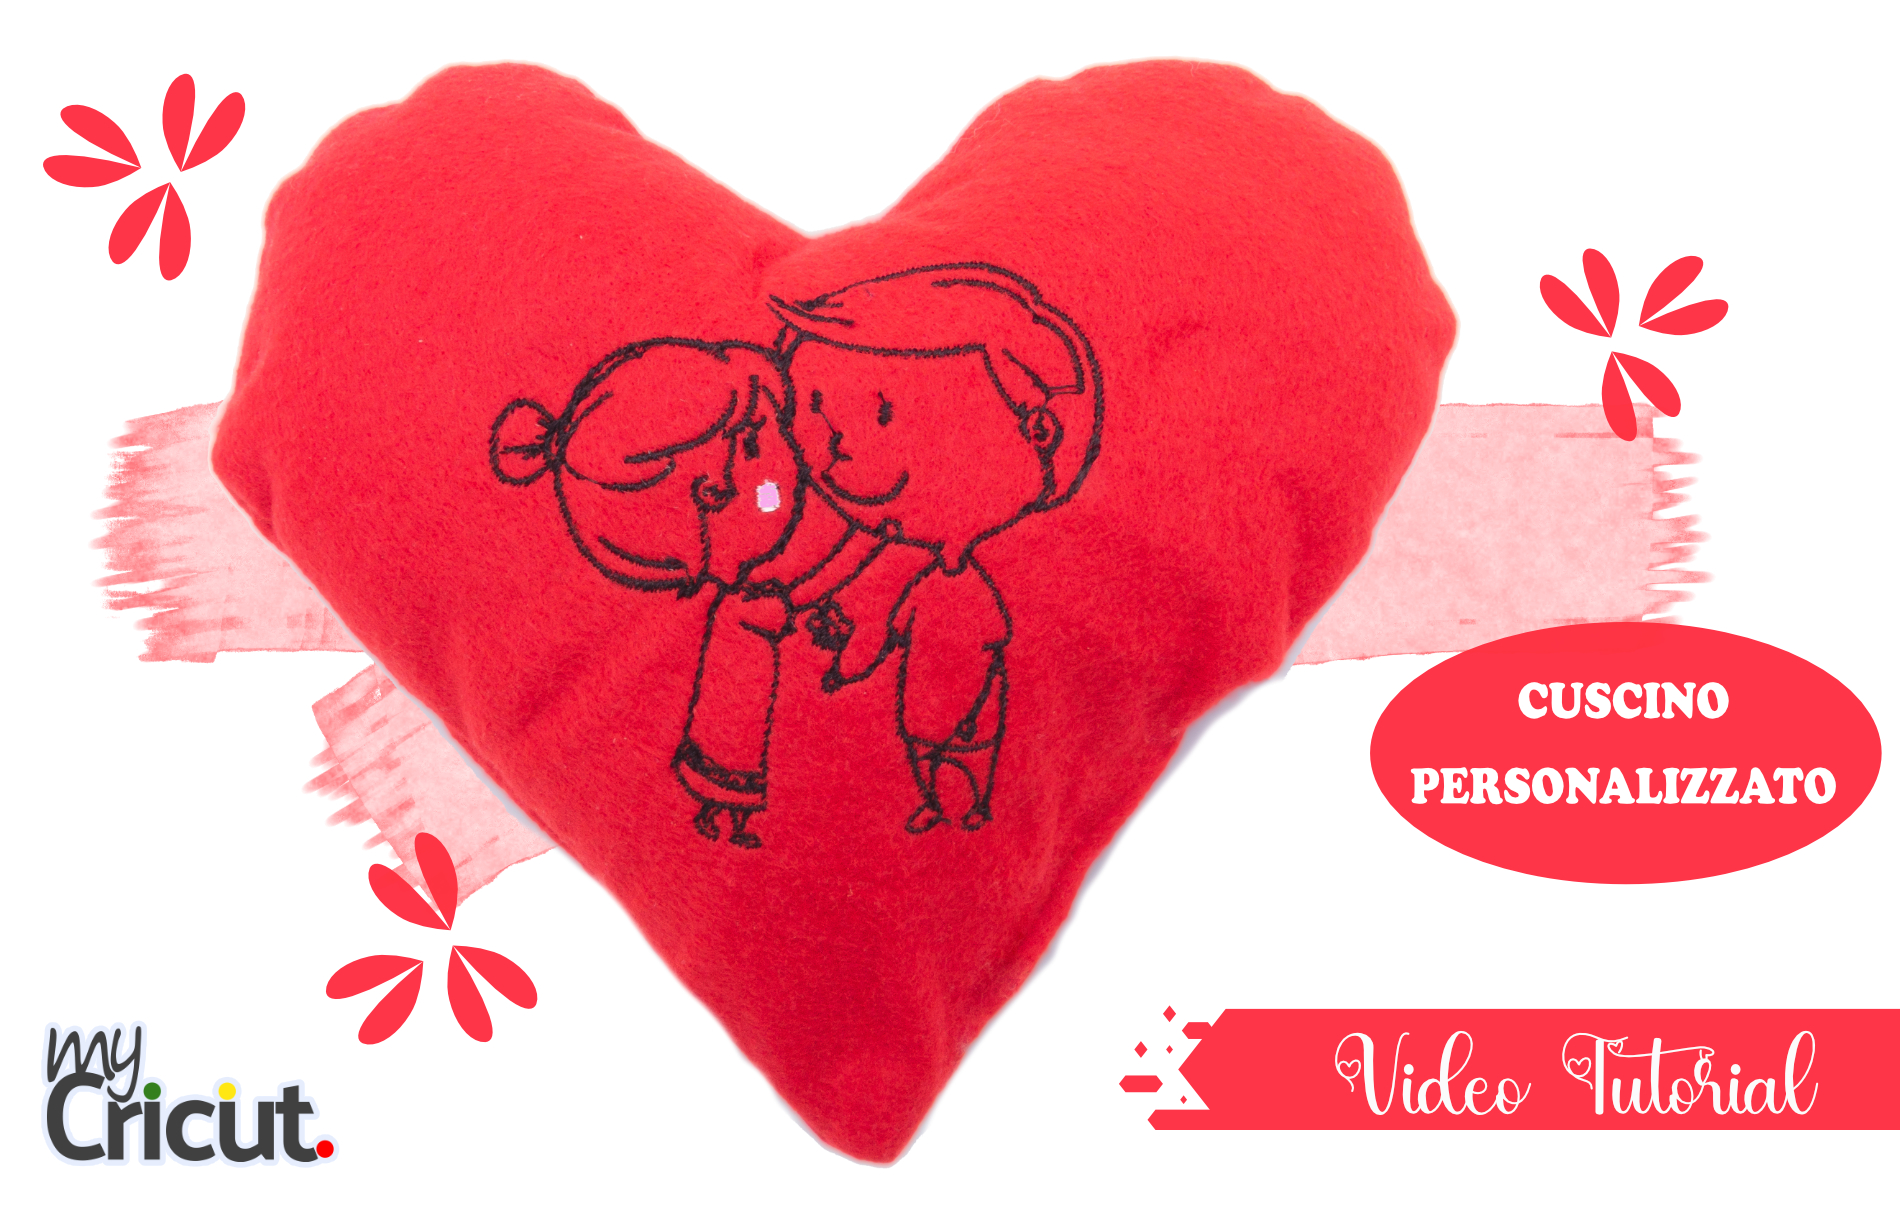 Cuscino personalizzato per San Valentino con Cricut Maker e Necchi